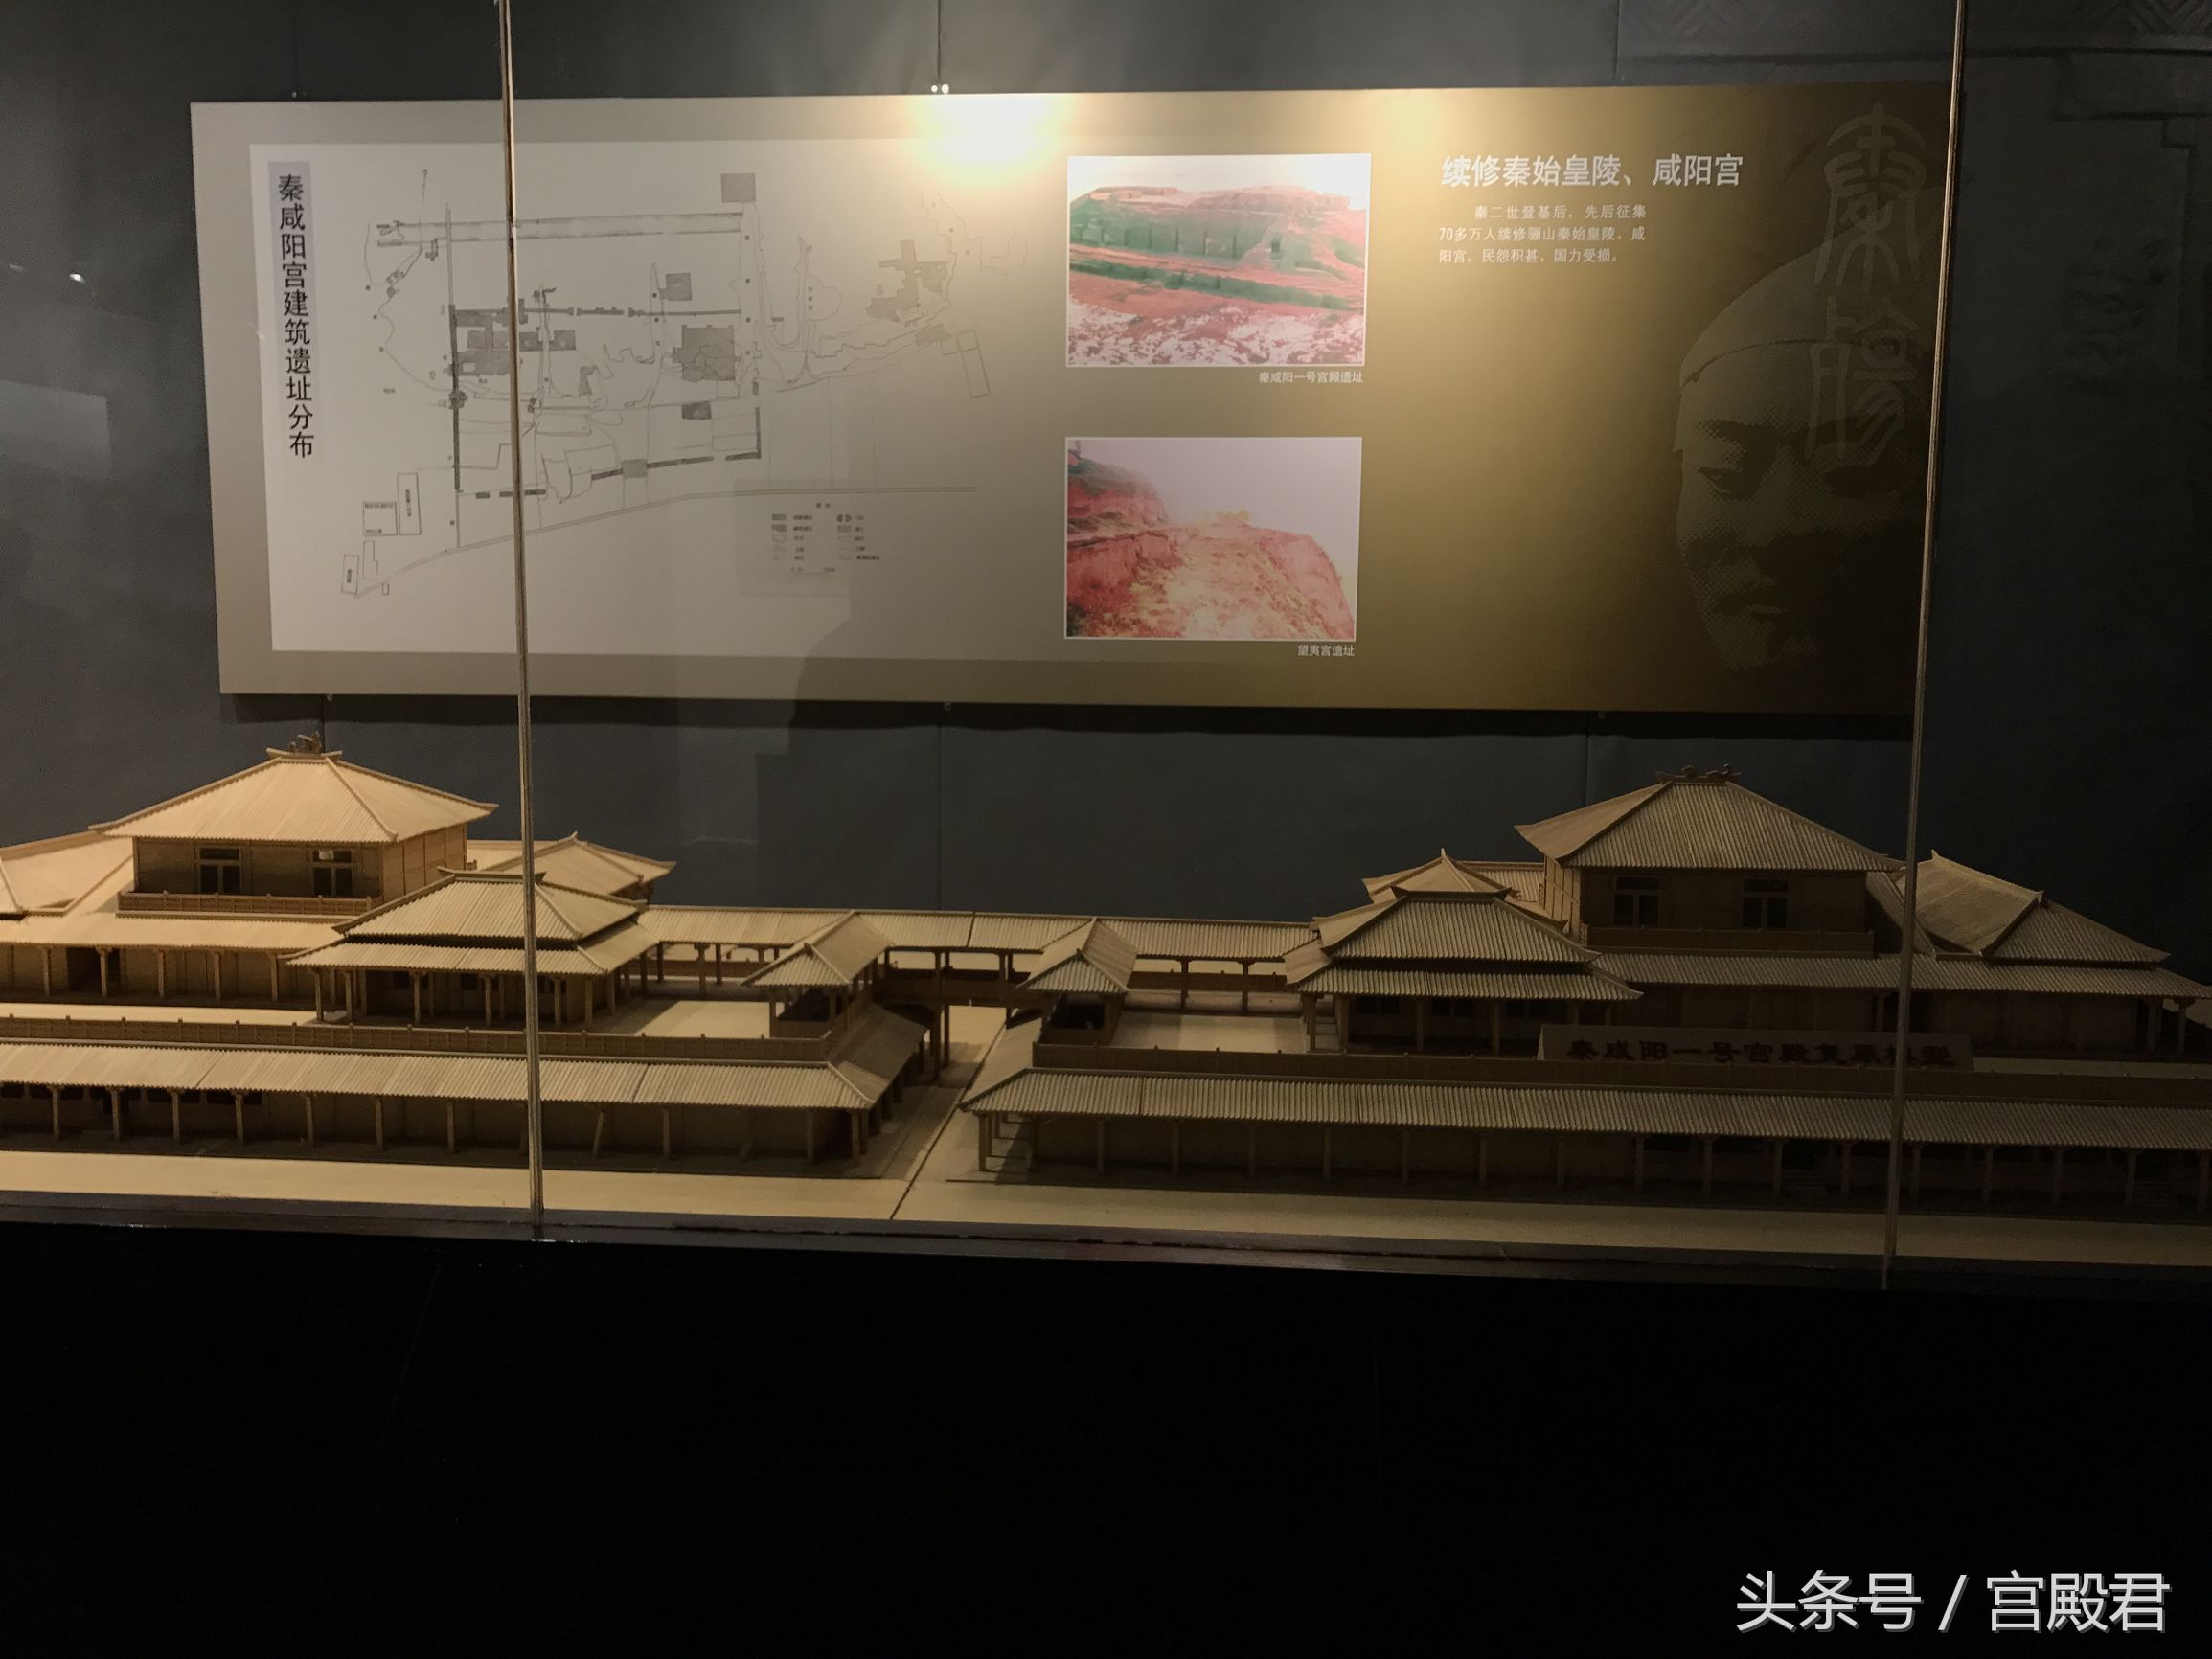 到底秦始皇住的咸阳宫是什么样子的，最后又是被谁烧的呢